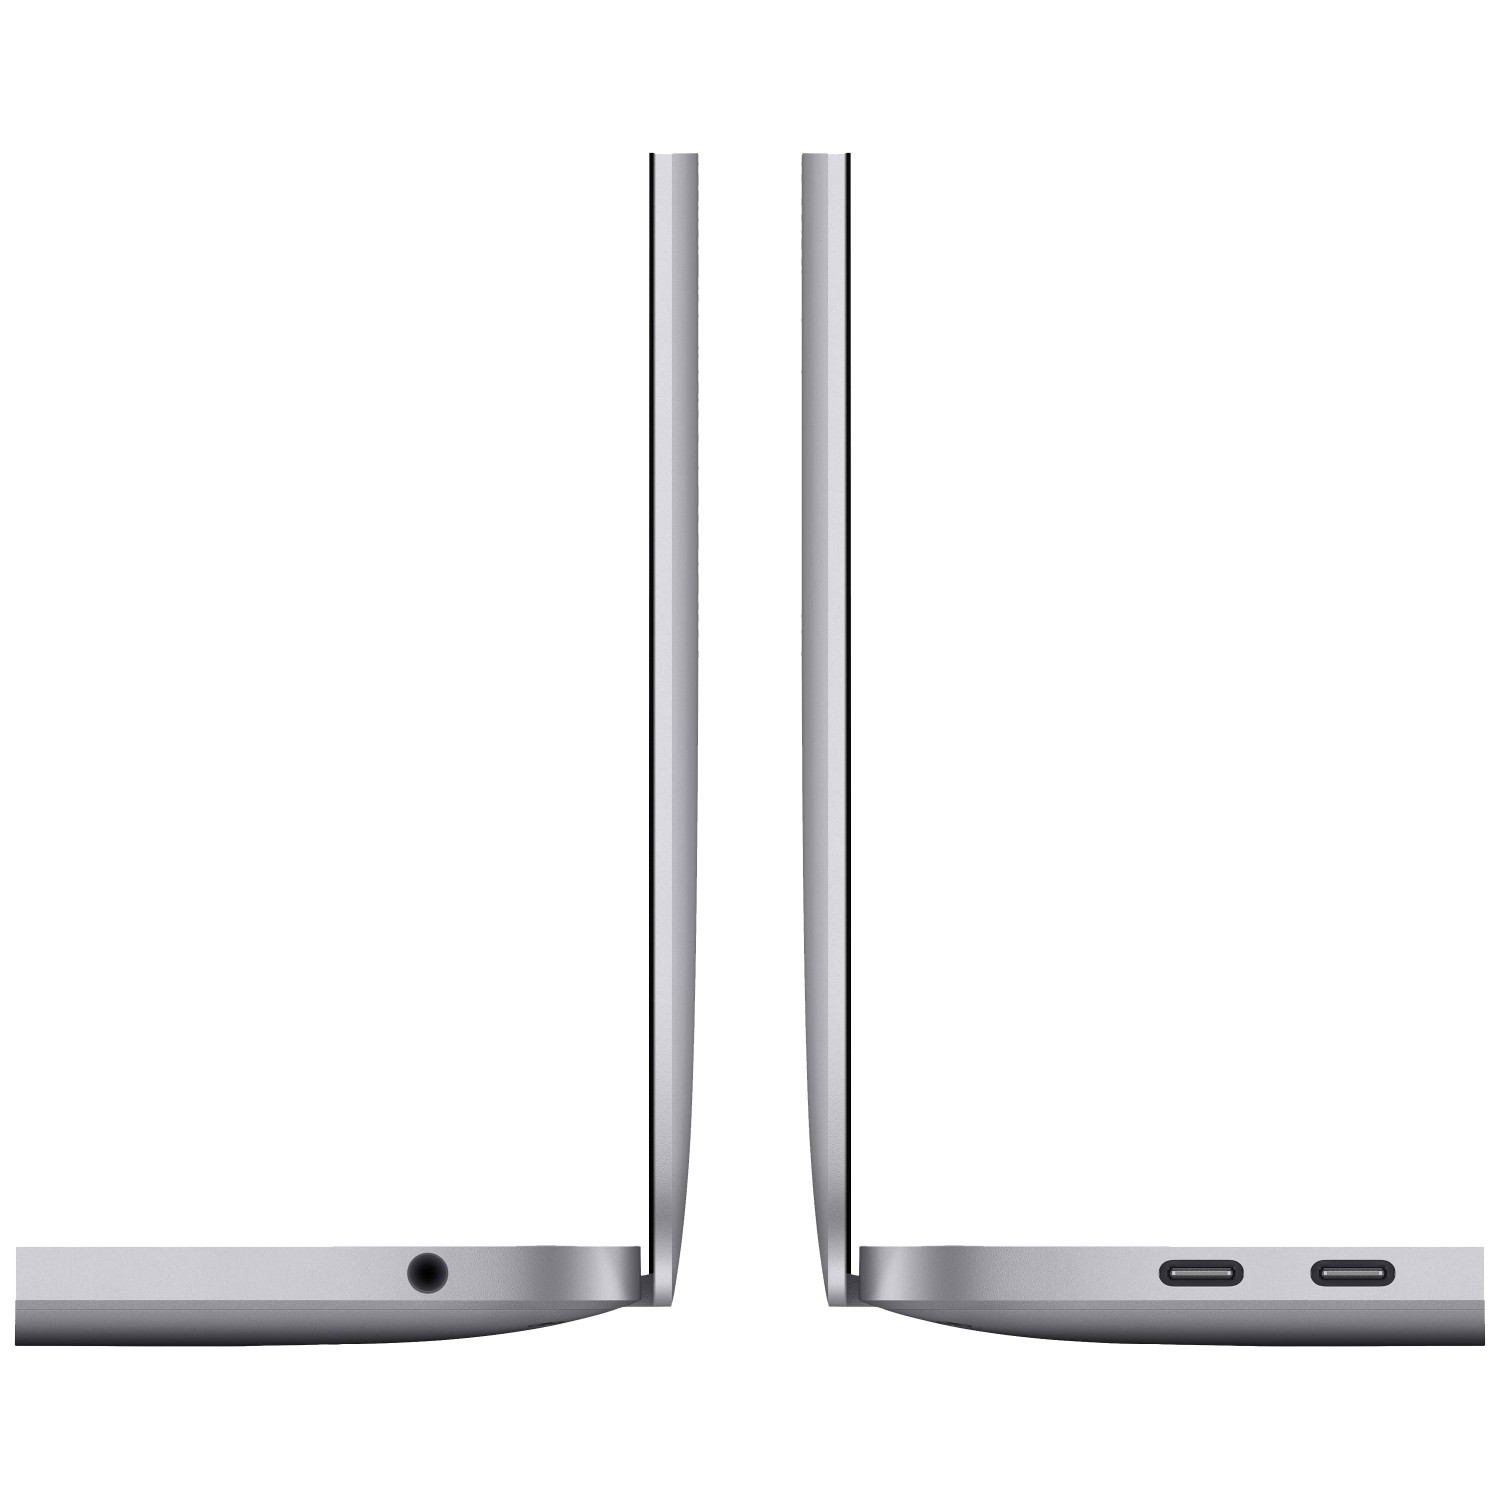 لپ تاپ Apple MacBook Pro 13 2020 CTO - Space Grey - B-4